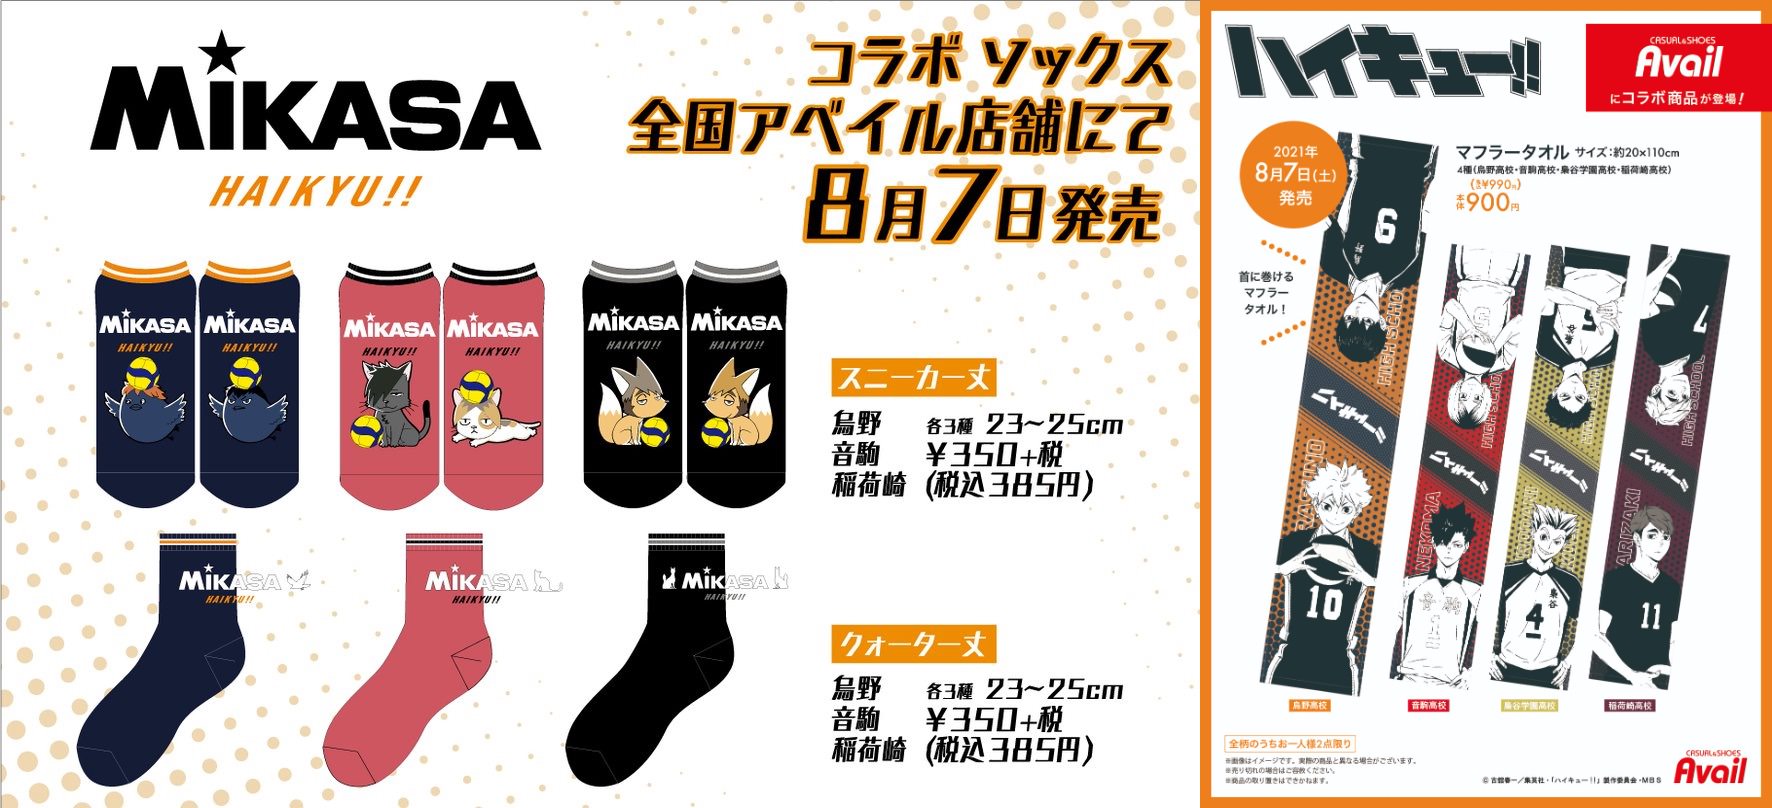 ハイキュー!! × アベイル全国 8月7日よりMIKASAコラボ等の商品発売!